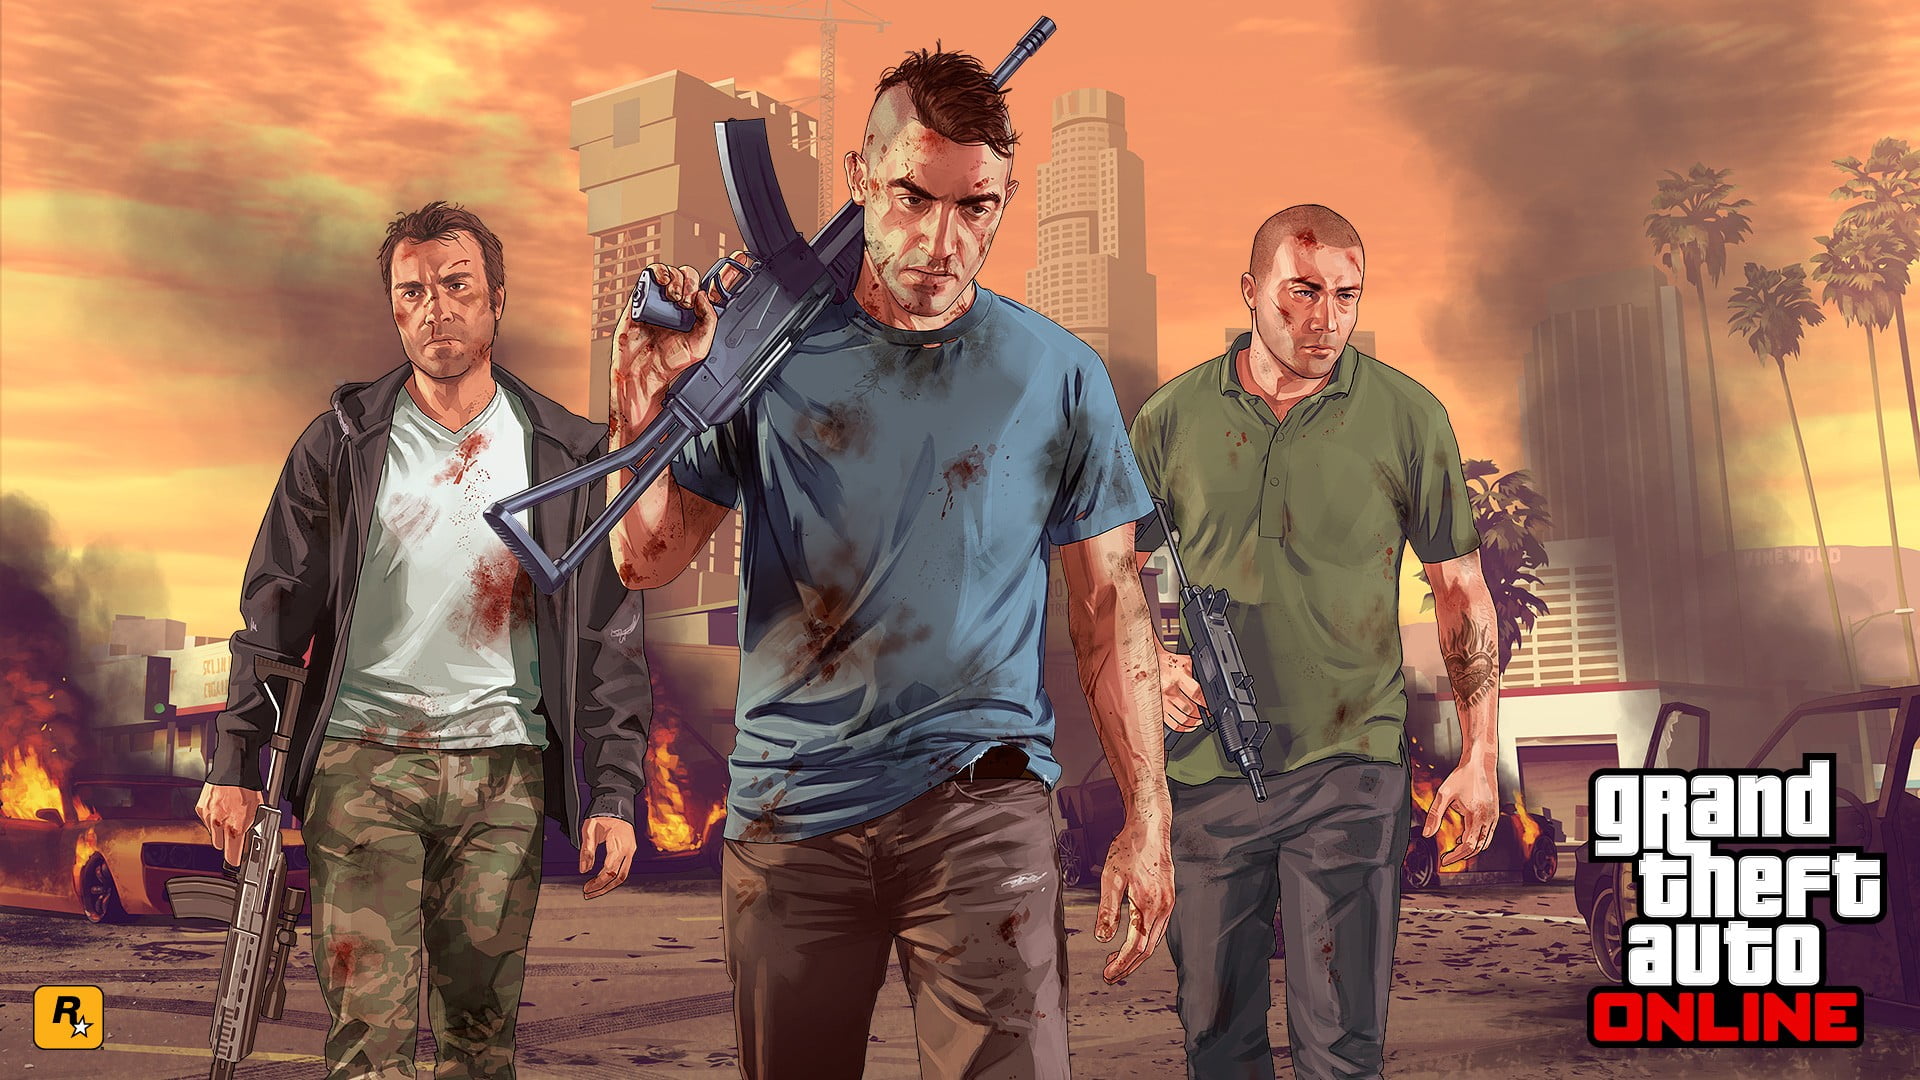 GTA Online wallpaper, Grand Theft Auto V, Rockstar Games, Grand Theft Auto V Online